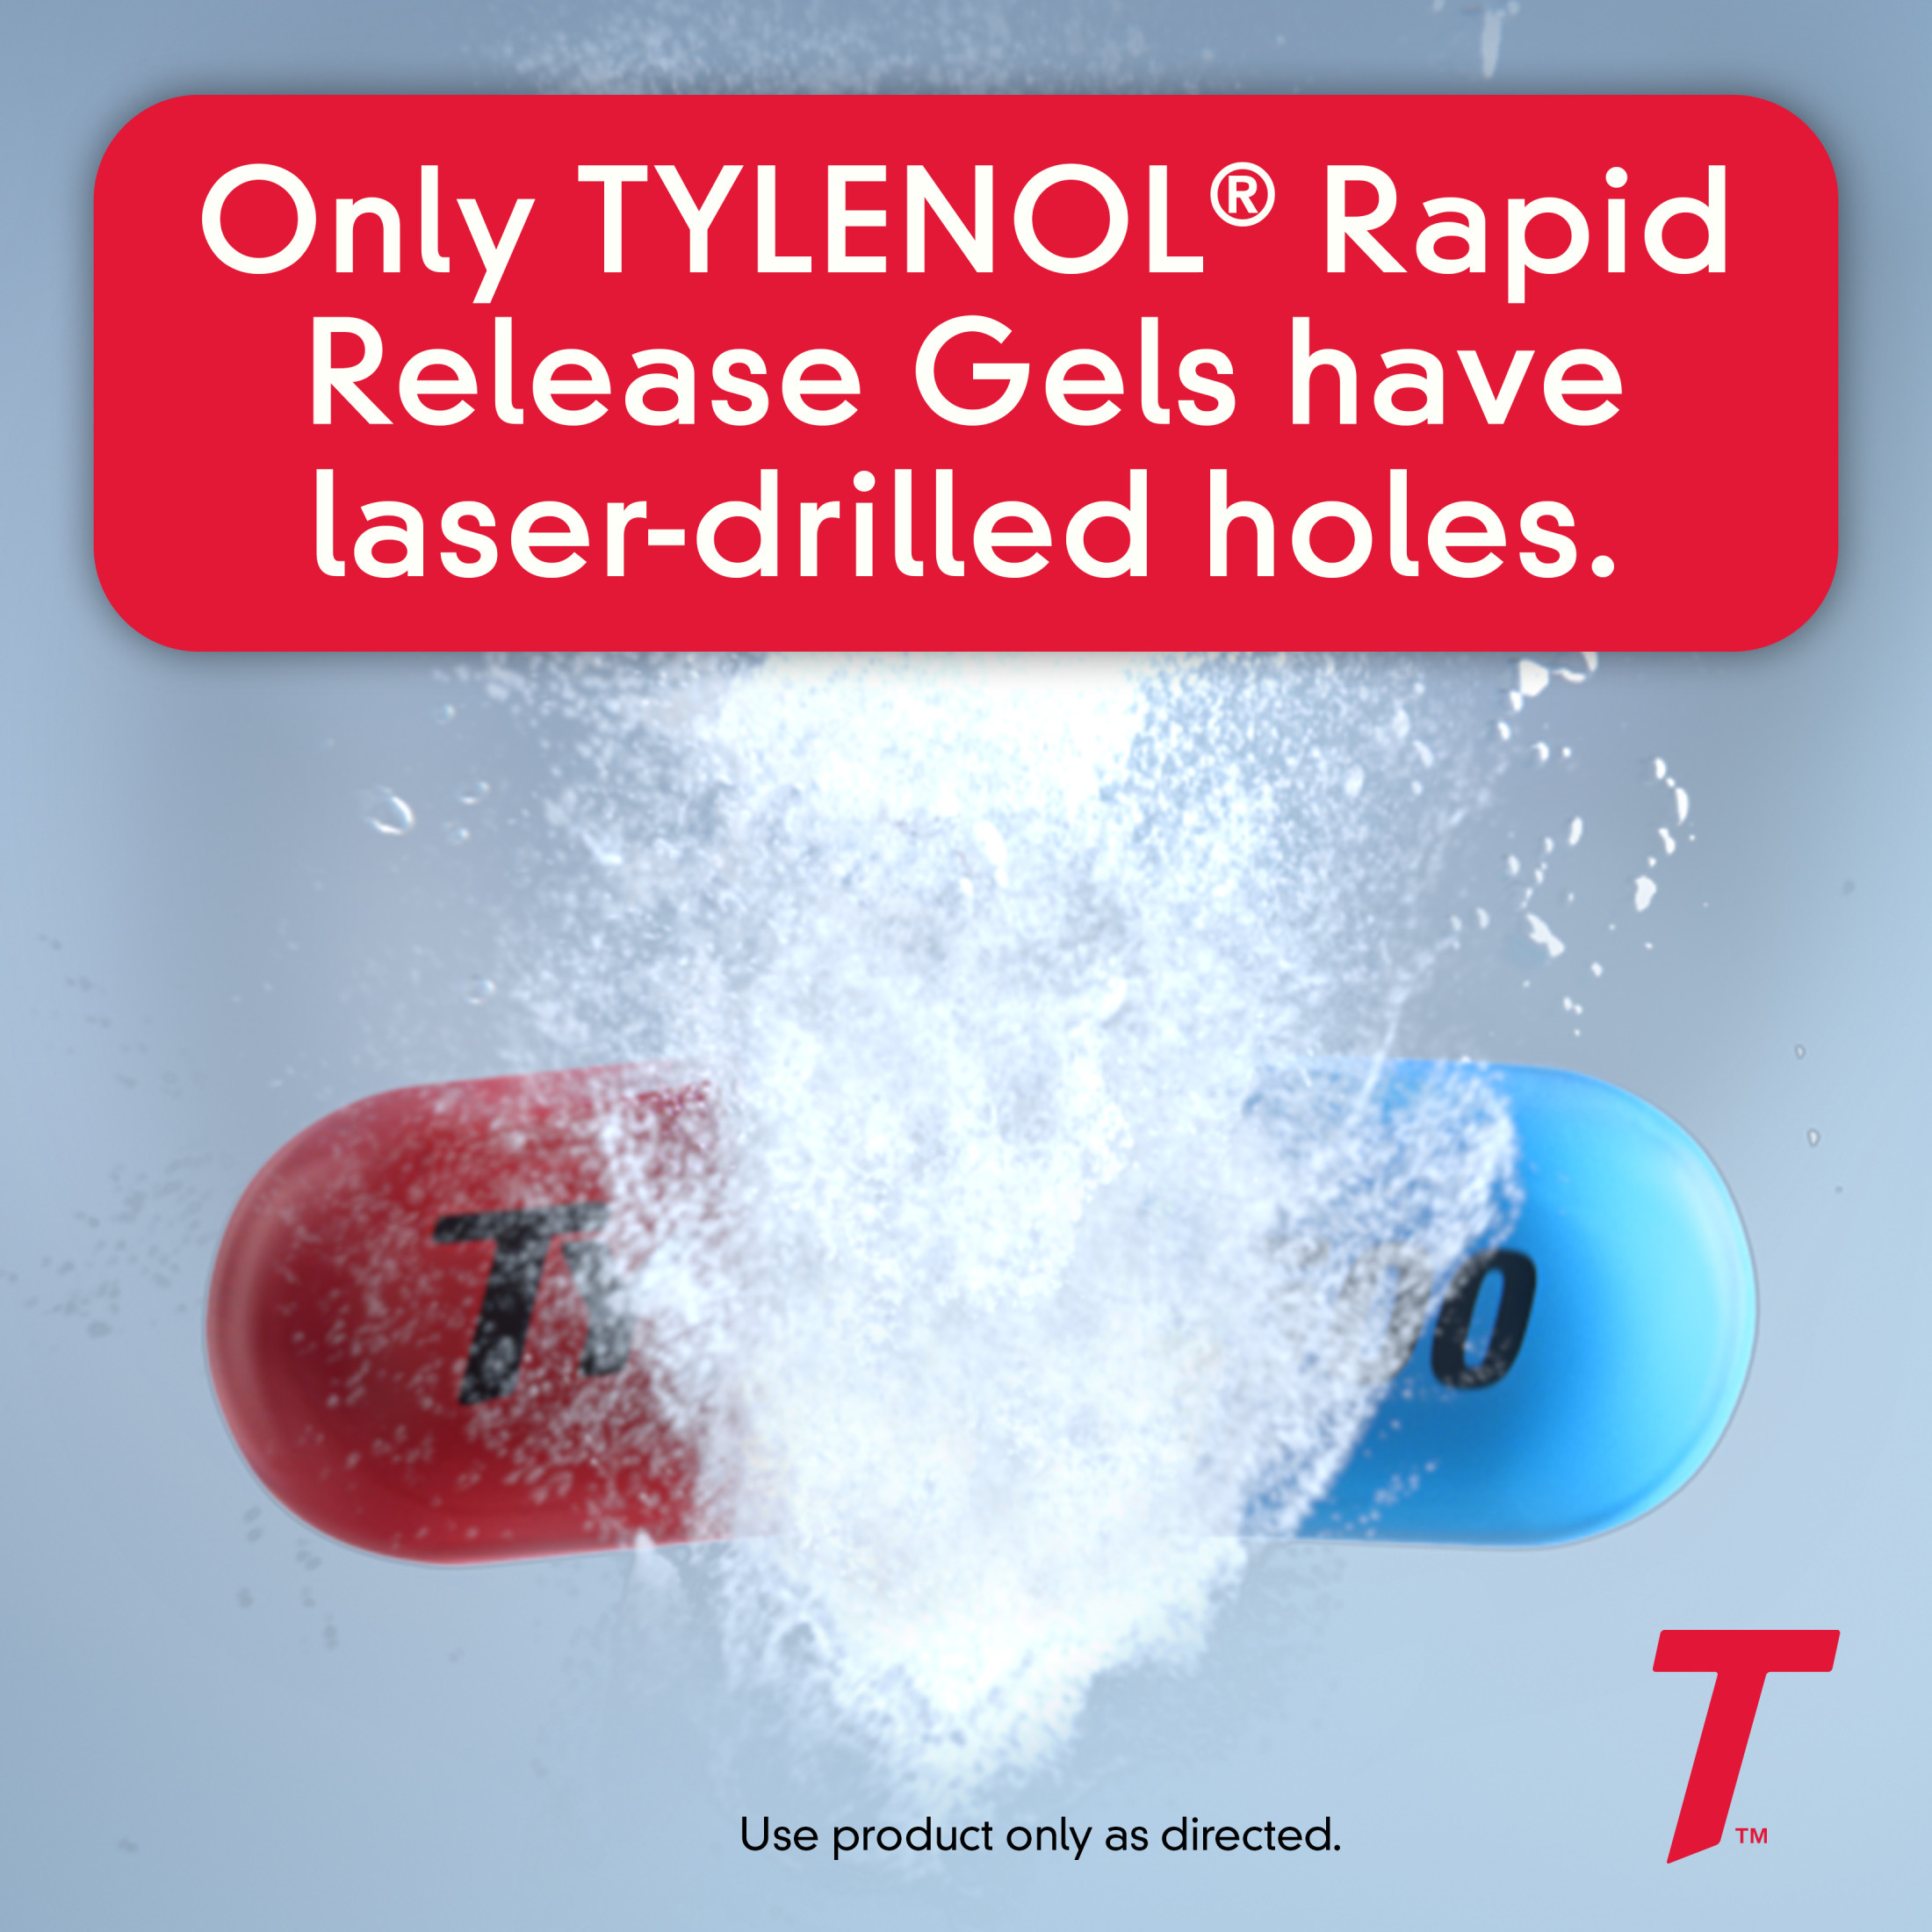 Tylenol Extra Strength Acetaminophen Rapid Release Gels, 24 Ct - image 3 of 12